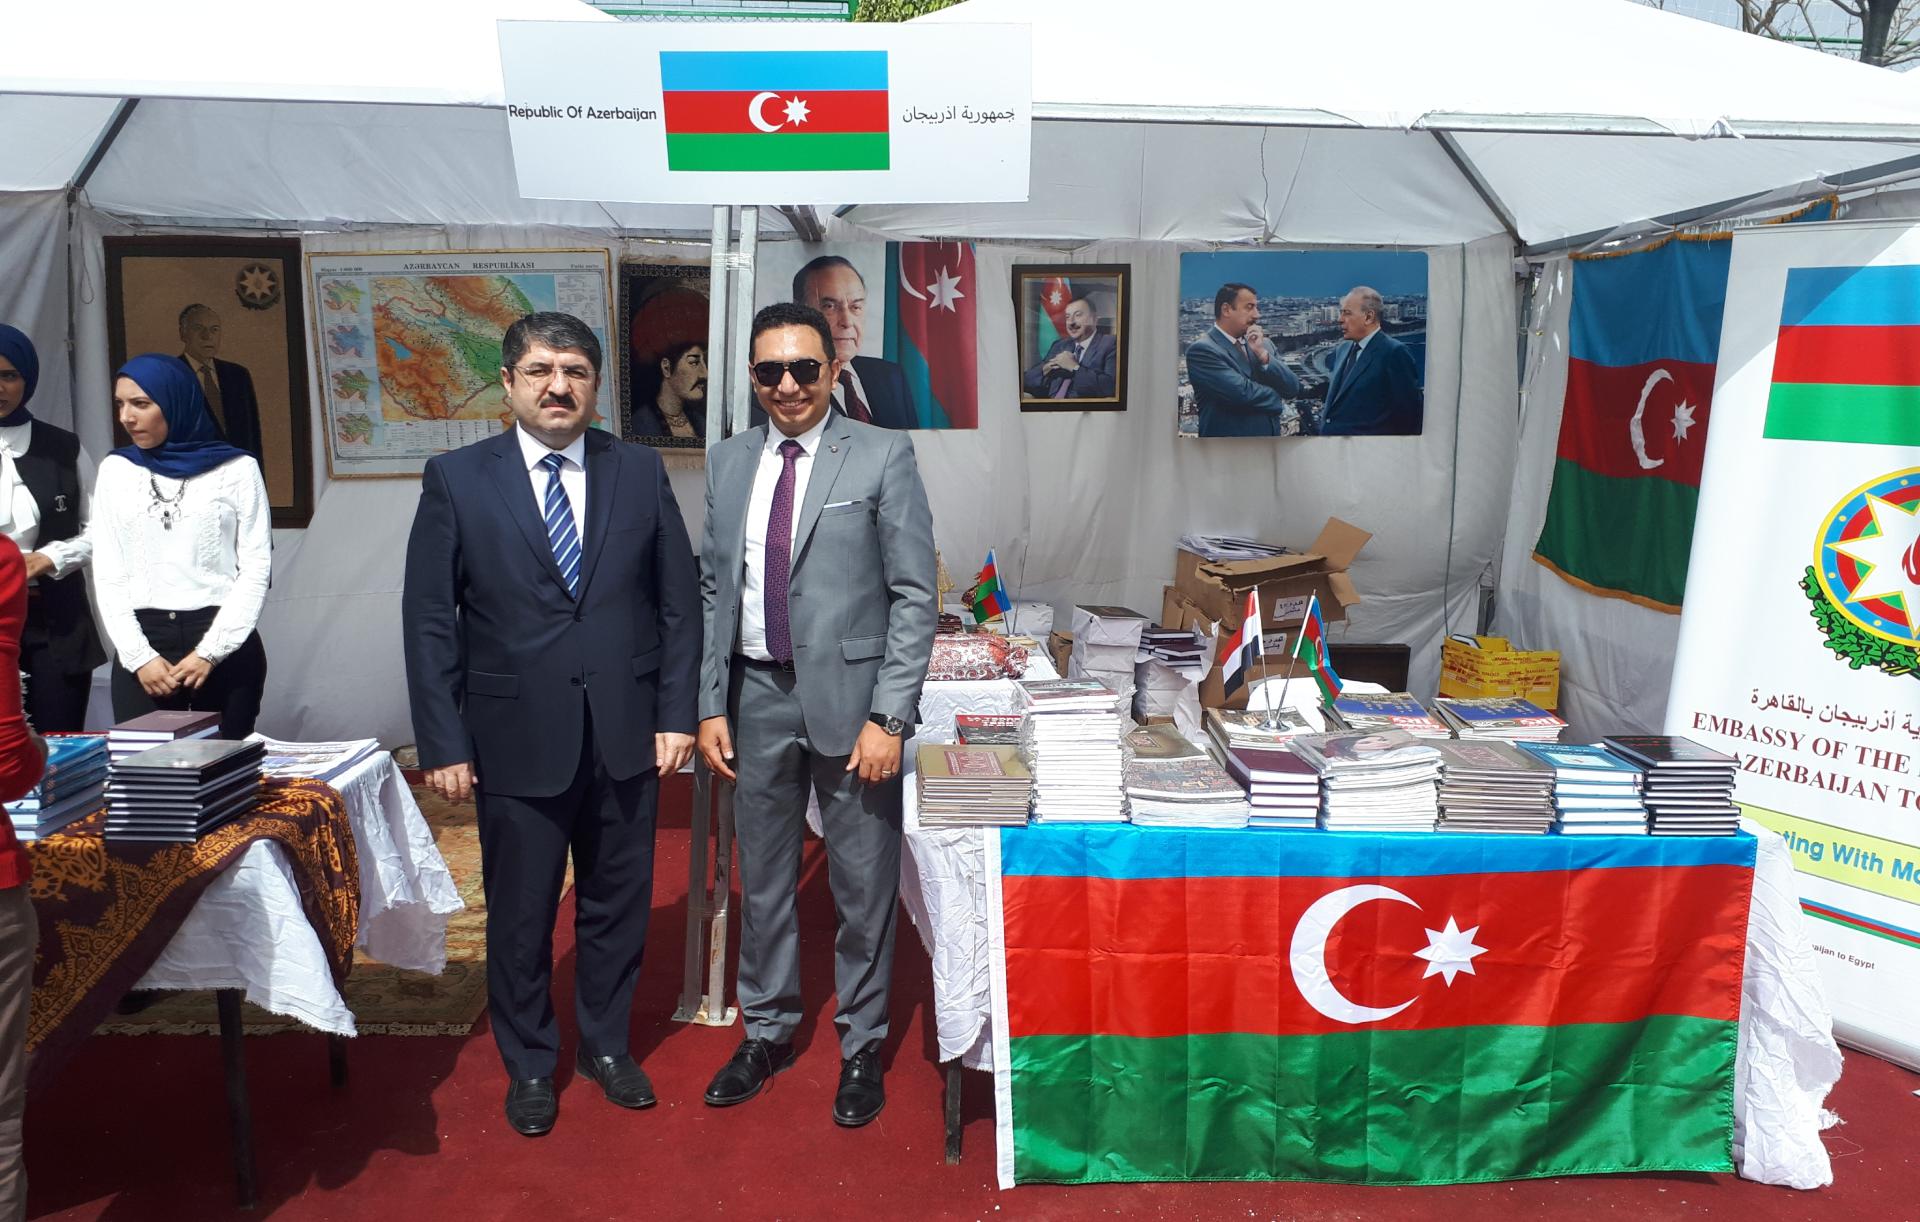 Misirdəki Azərbaycan diasporu beynəlxalq festivala qatılıb (FOTO) - Gallery Image